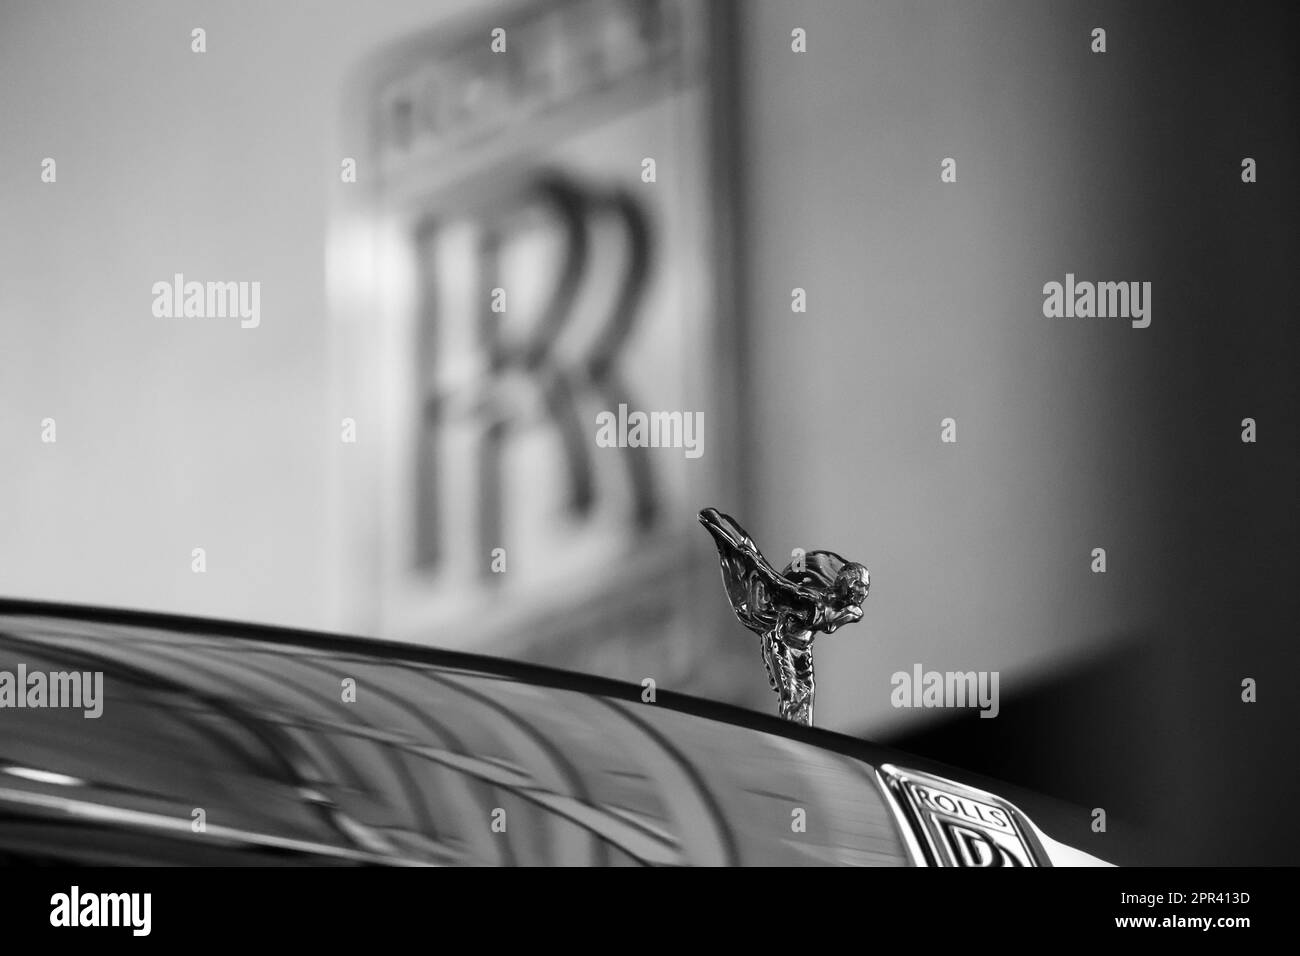 Décoration Spirit of Ecstasy sur Rolls Royce Ghost à BMW Welt, Munich Allemagne Banque D'Images